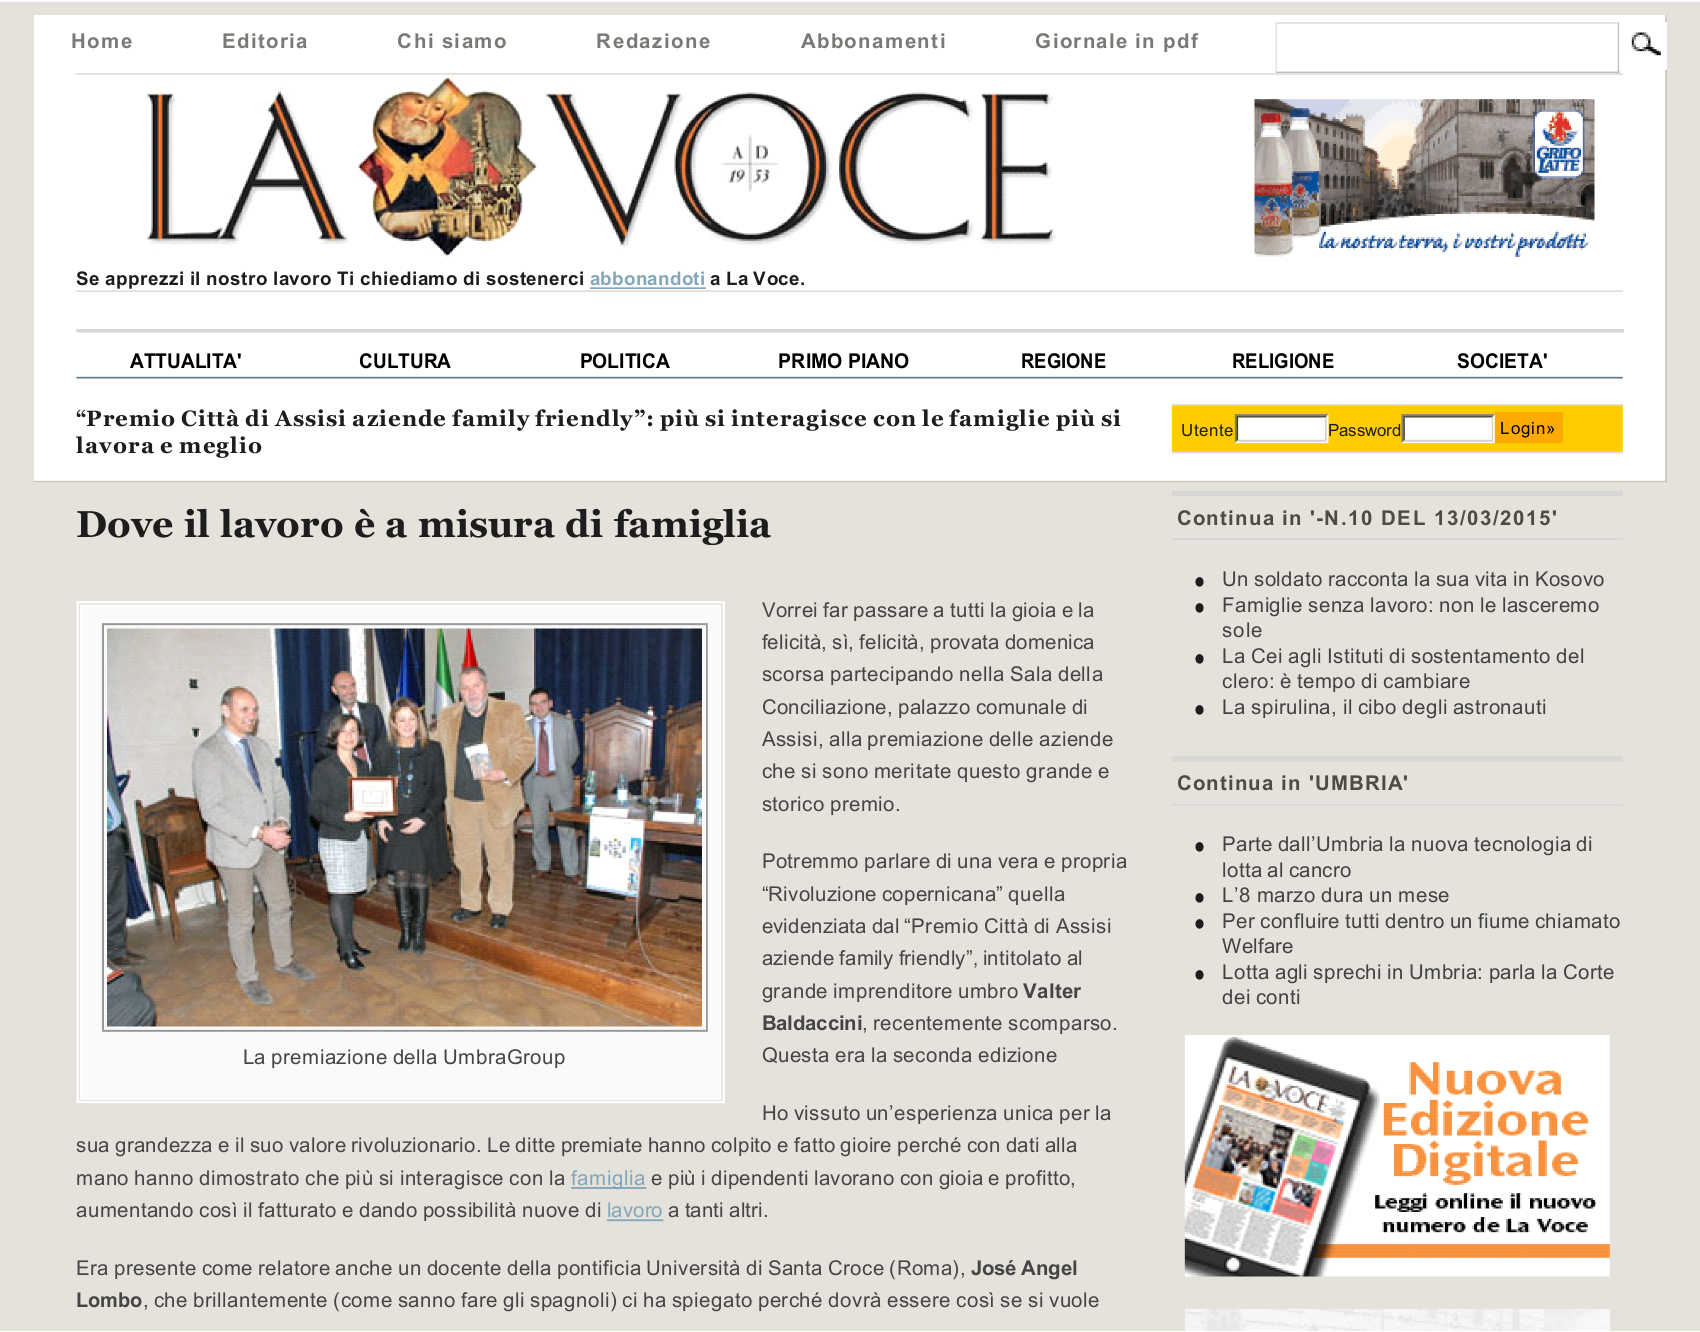 Articolo pubblicato sul sito lavoce.it lavoce.it Più : www.alexa.com/siteinfo/lavoce.it Estrazione : 13/03/2015 12:56:45 Categoria : Attualità File : piwi-9-12-216578-20150313-1959018483.